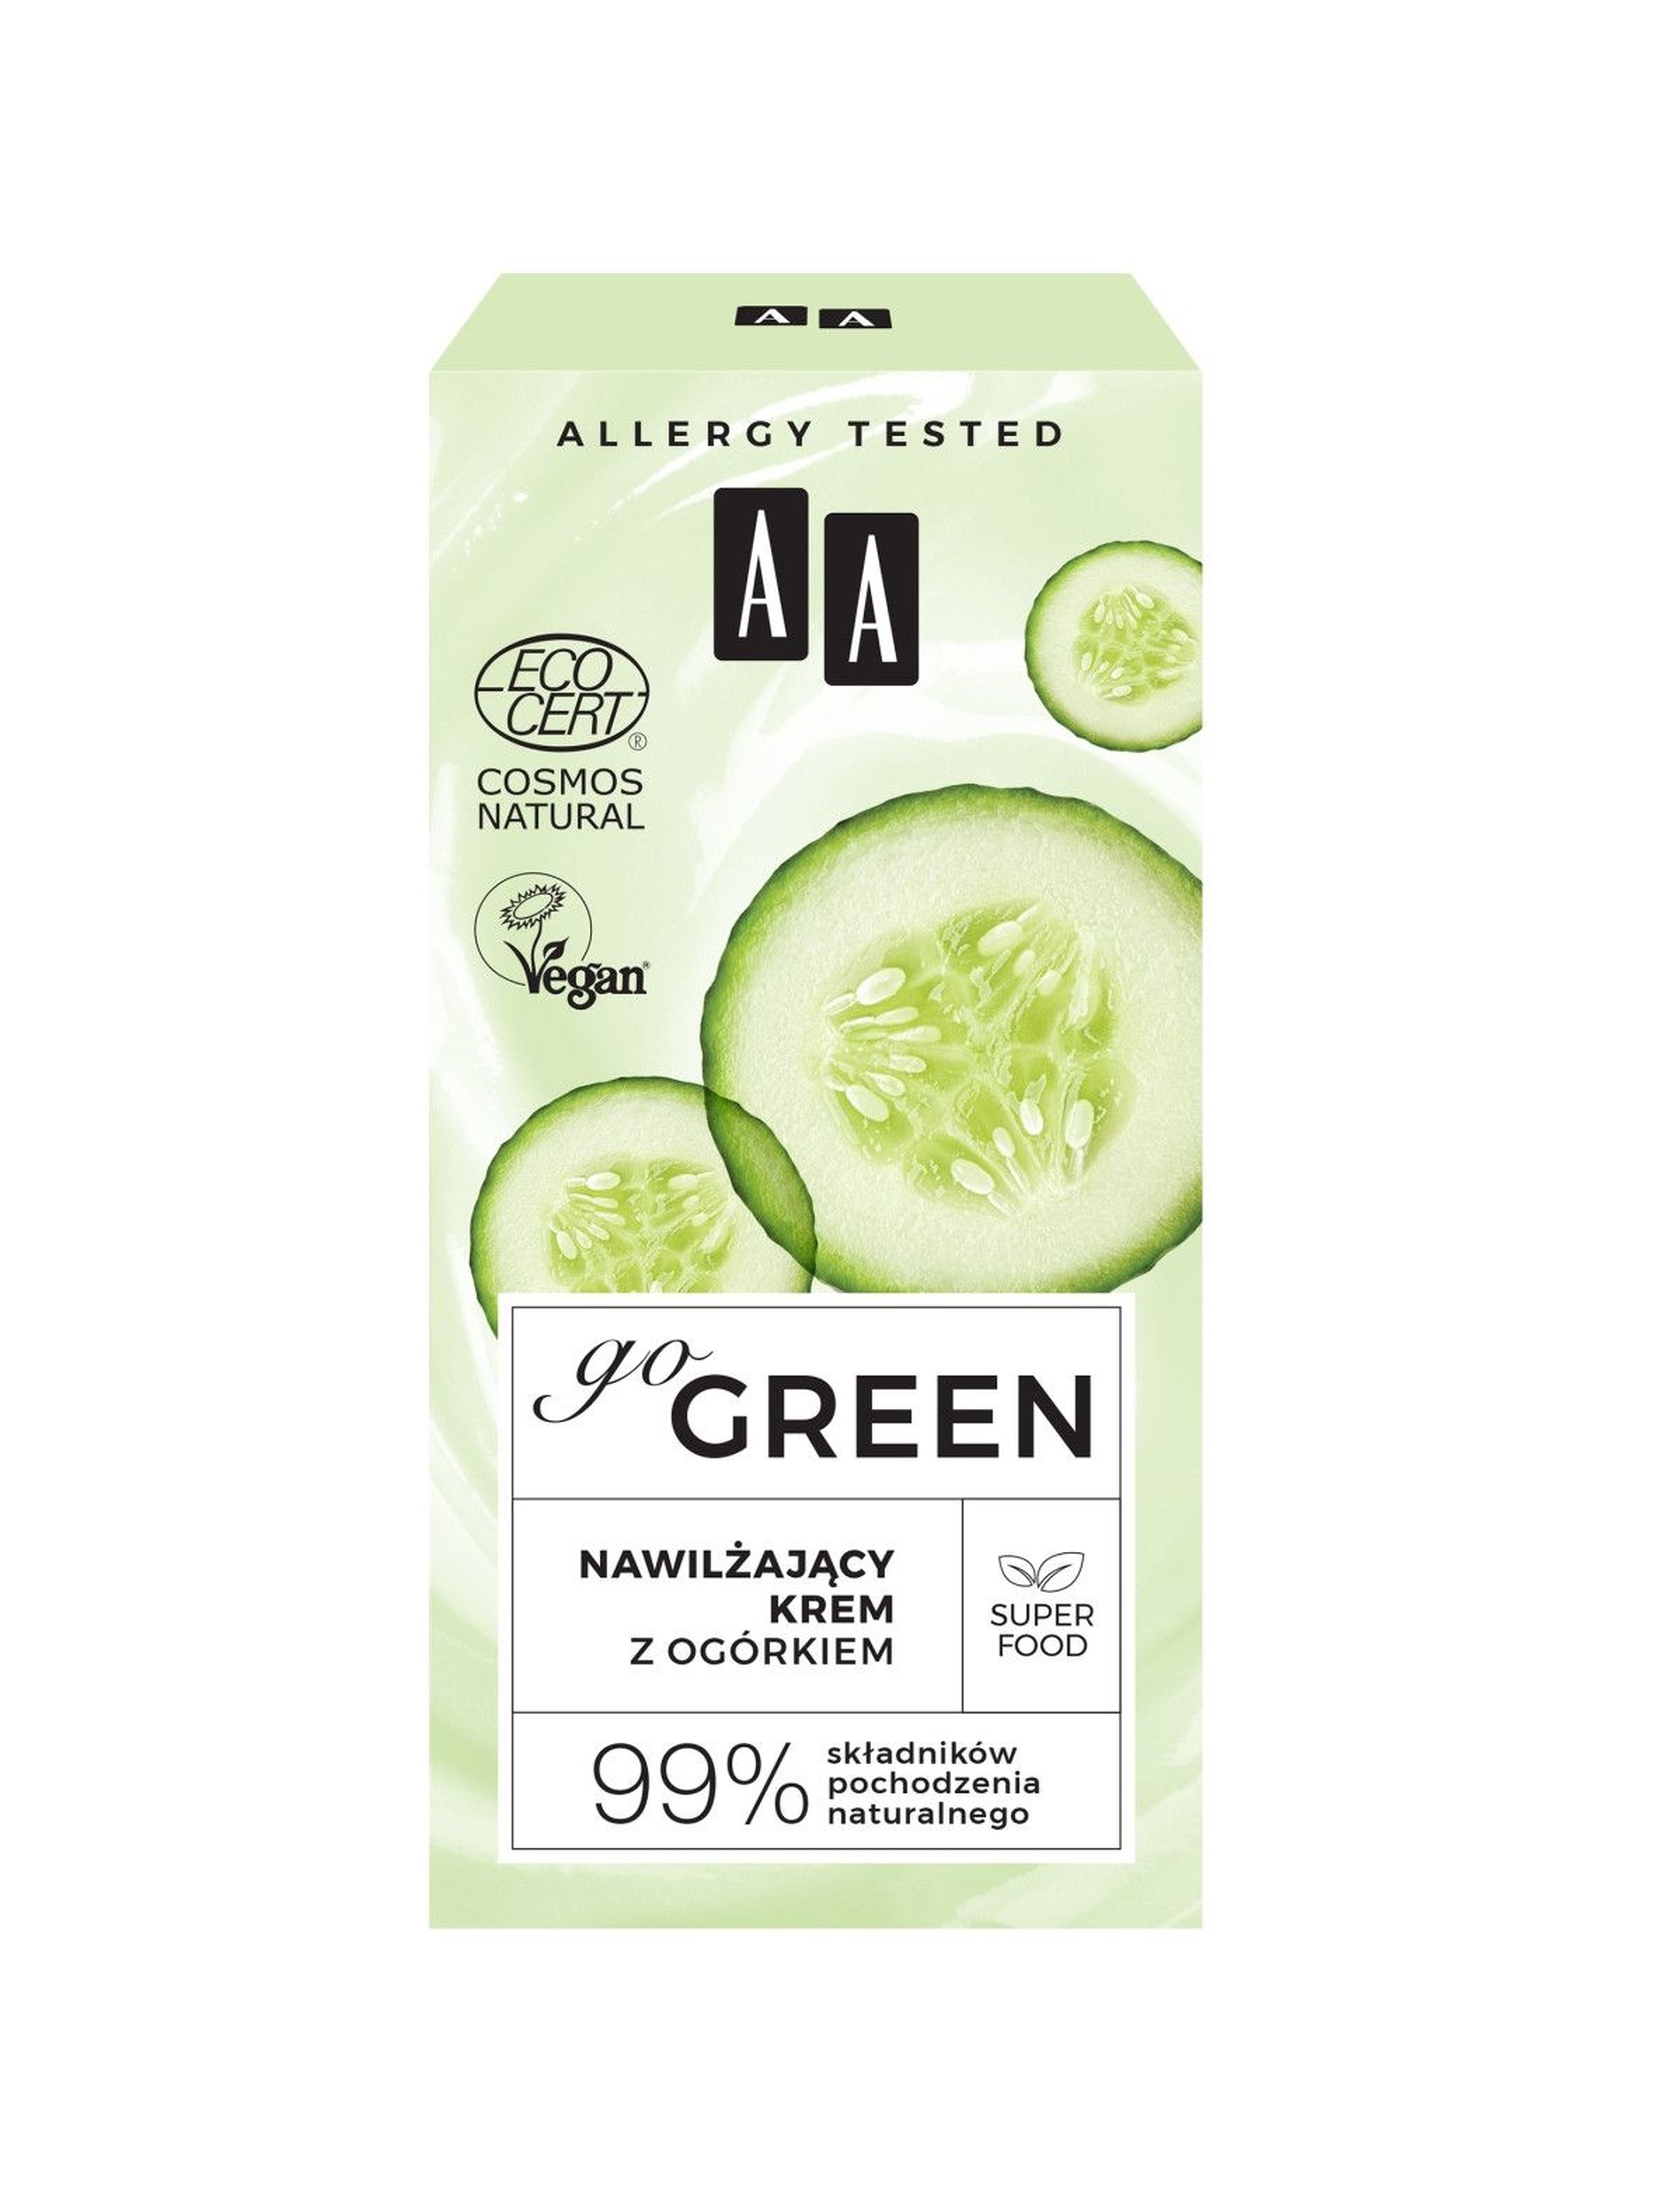 AA Go Green nawilżający krem z ogórkiem NATURAL 50 ml